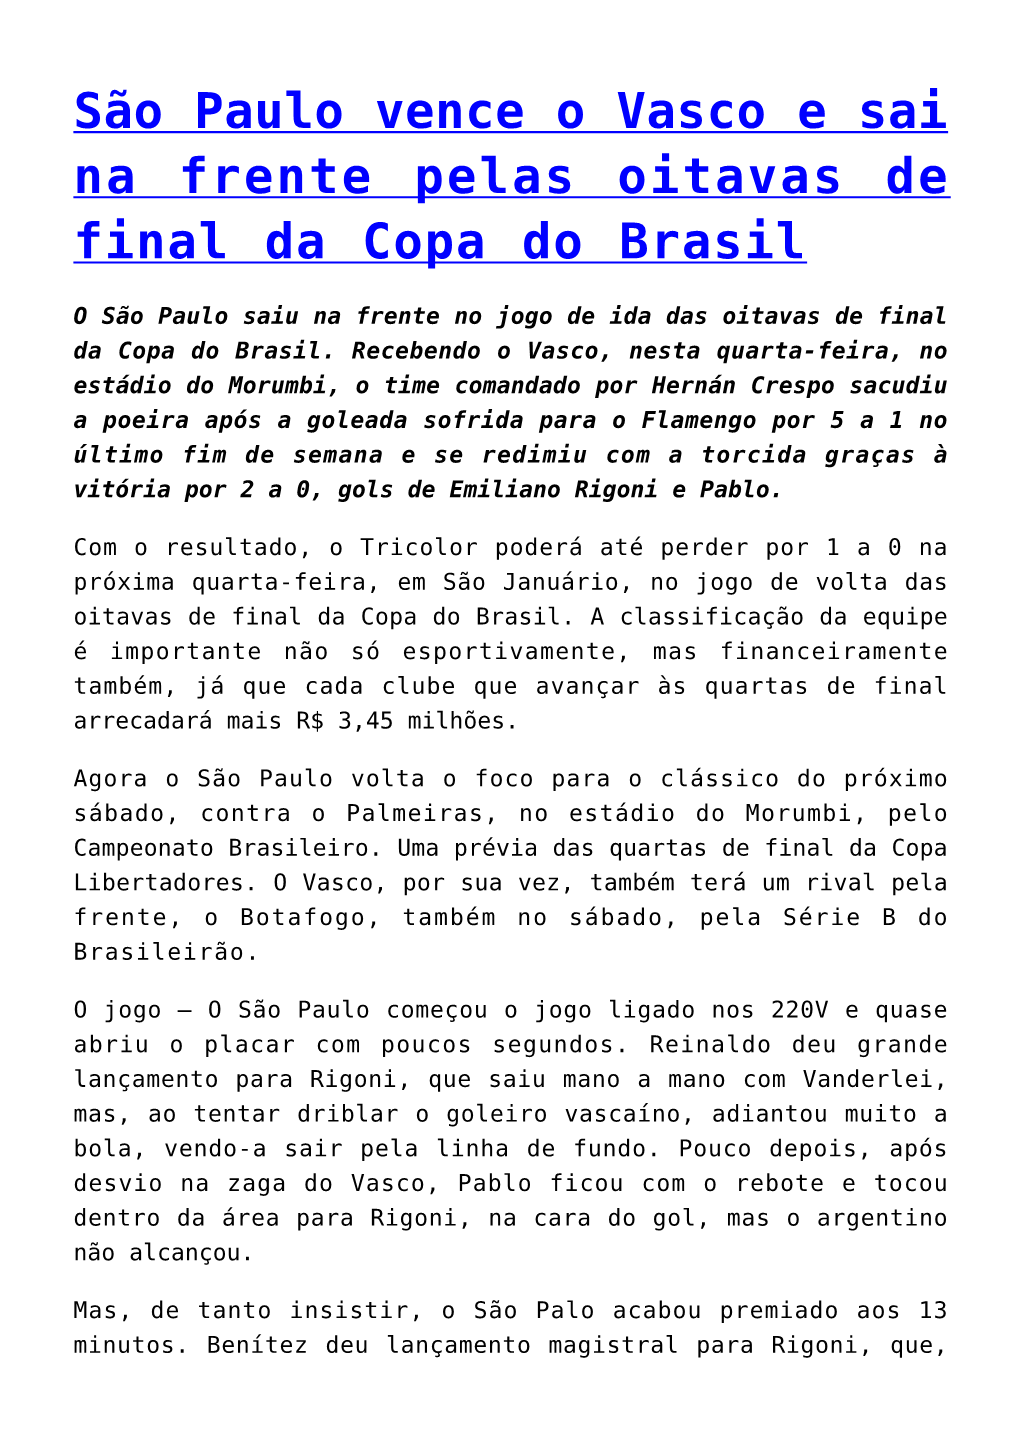 São Paulo Vence O Vasco E Sai Na Frente Pelas Oitavas De Final Da Copa Do Brasil